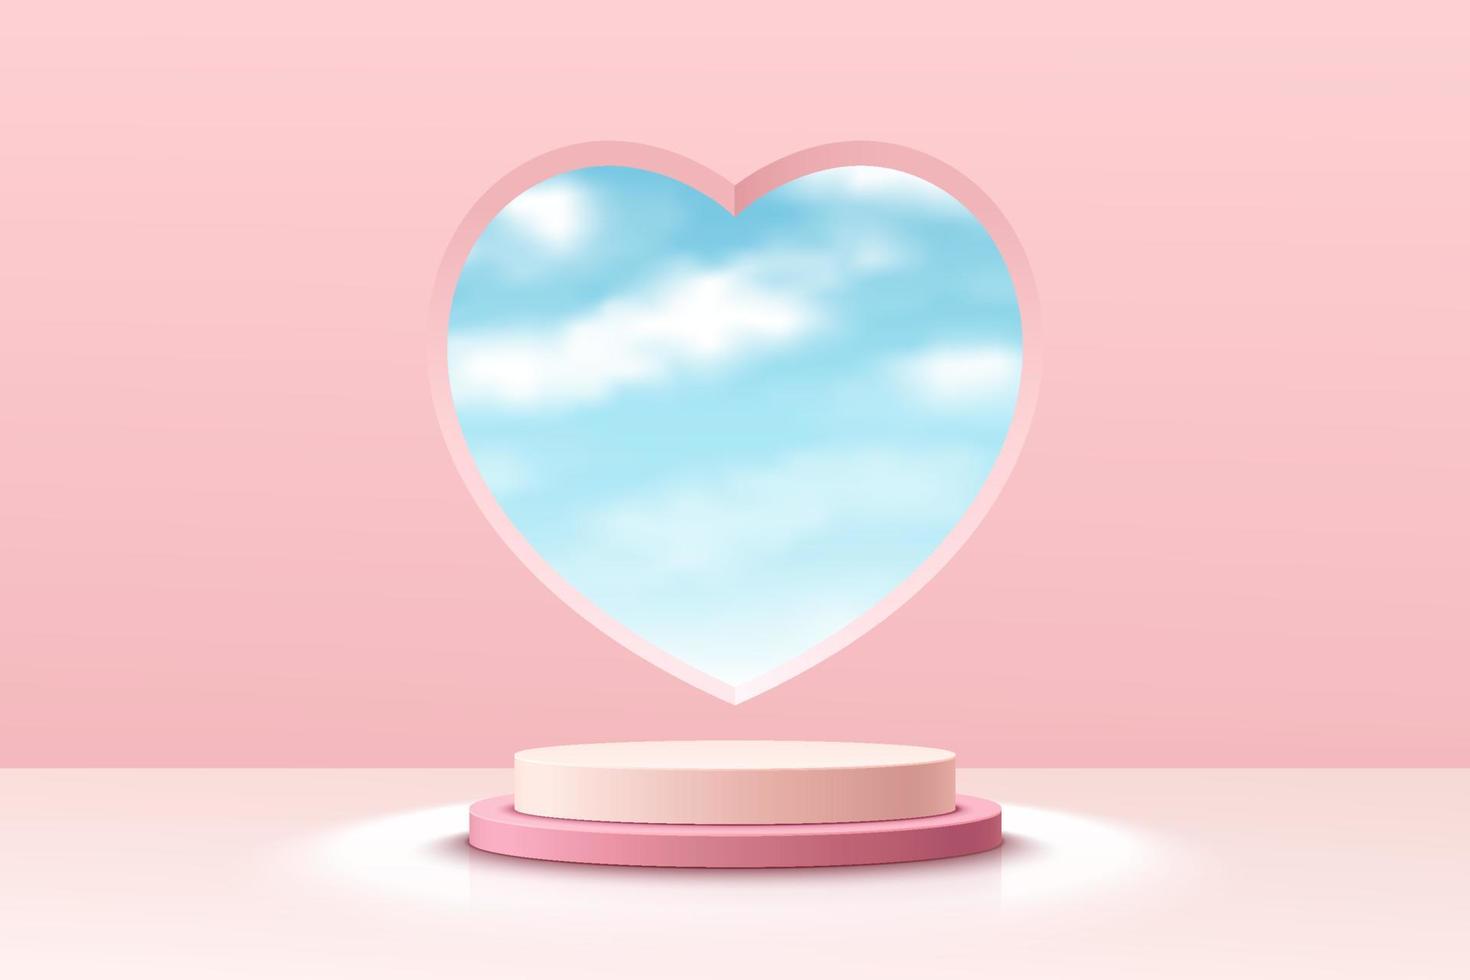 pódio de pedestal de cilindro 3d rosa e branco realista com céu de nuvem azul na janela do coração. cena mínima do dia dos namorados para vitrine de produtos, exibição de promoção. design de plataforma de quarto de estúdio abstrato vetorial. vetor